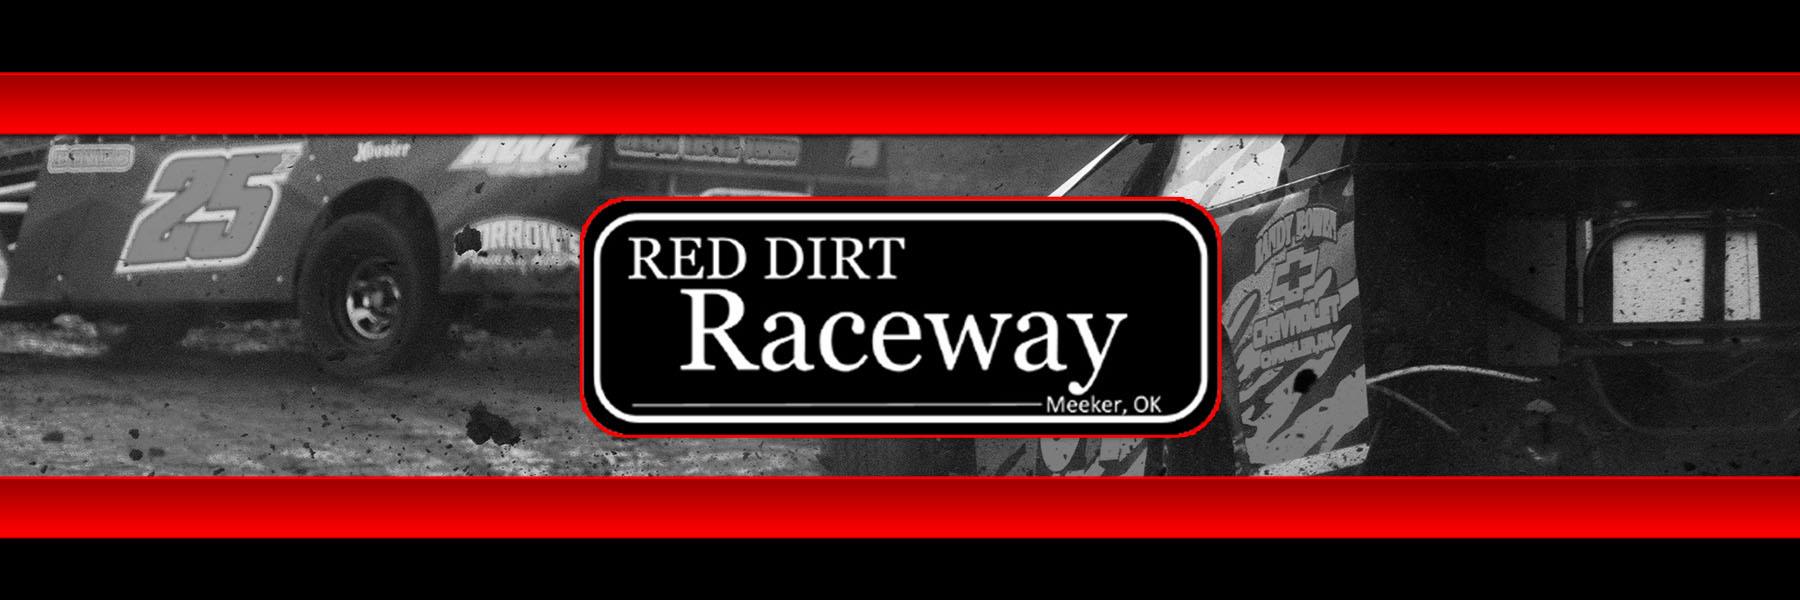 3/5/2022 - Red Dirt Raceway